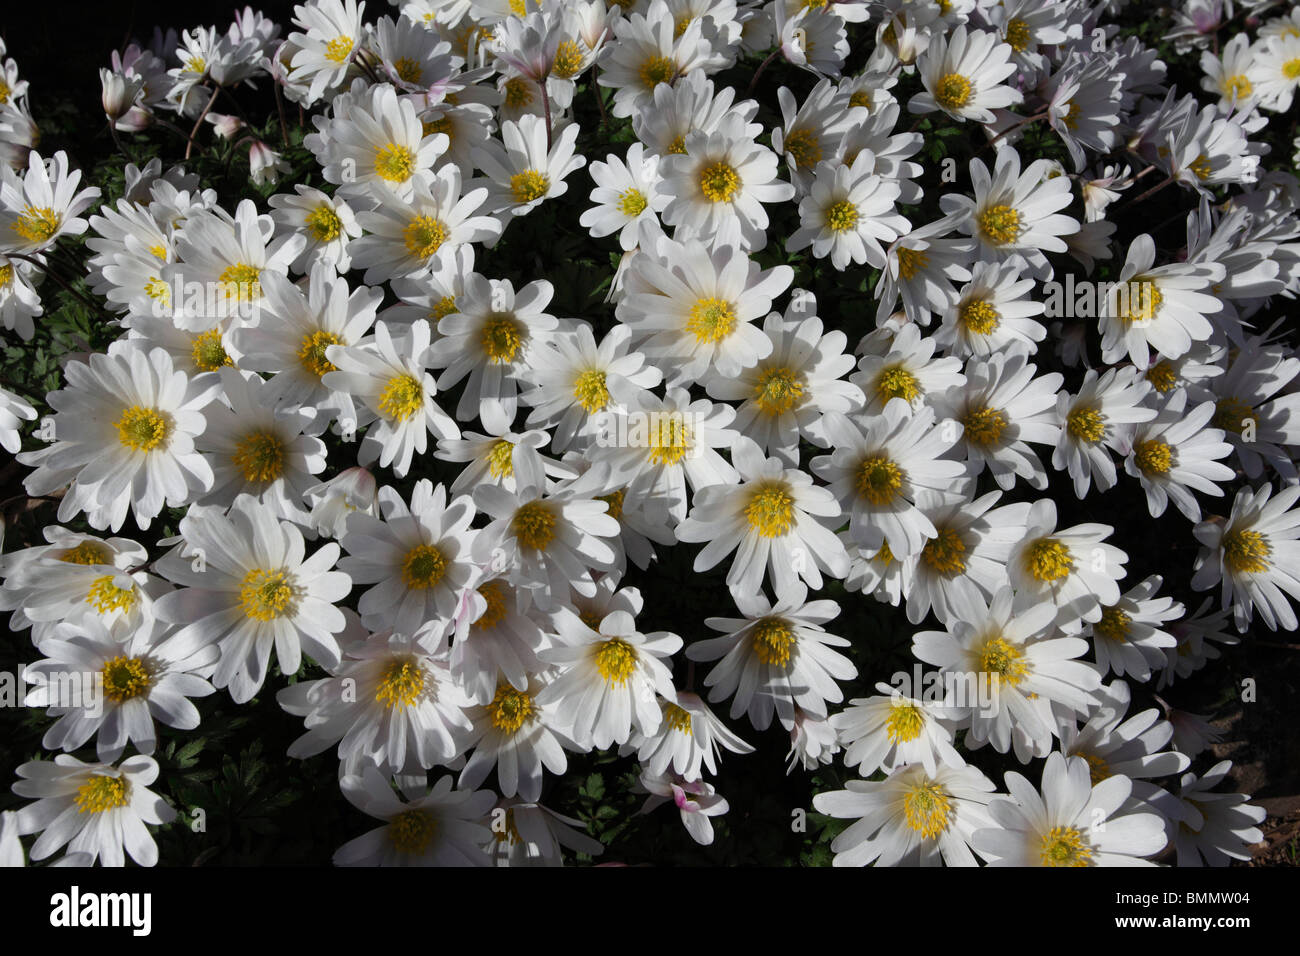 Windflower (Anemone blanda White splendour) plants in flower Stock Photo